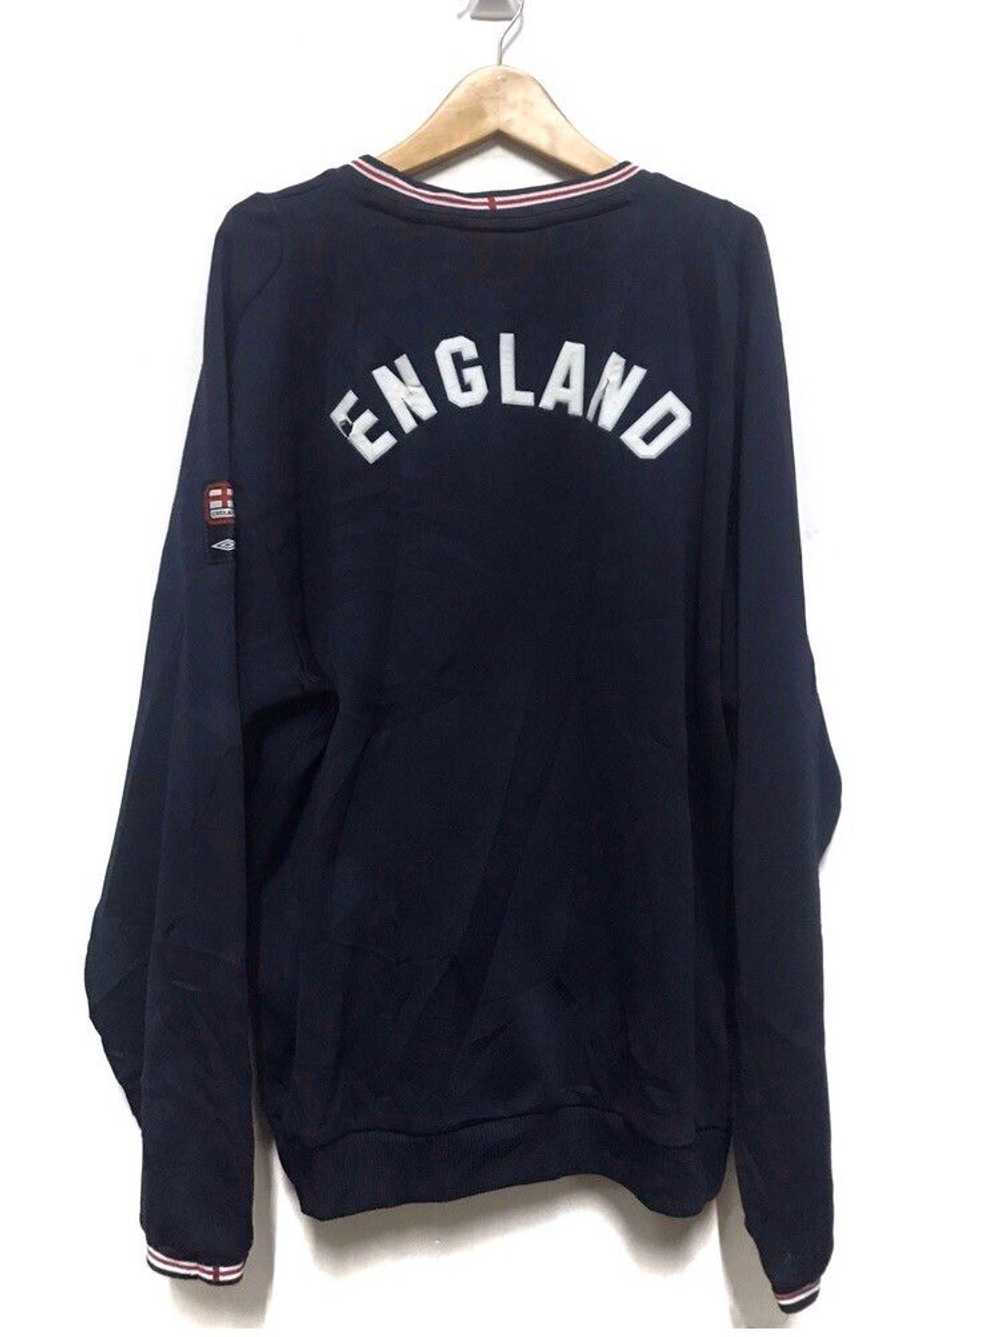 Umbro England football sweatshirt - image 8